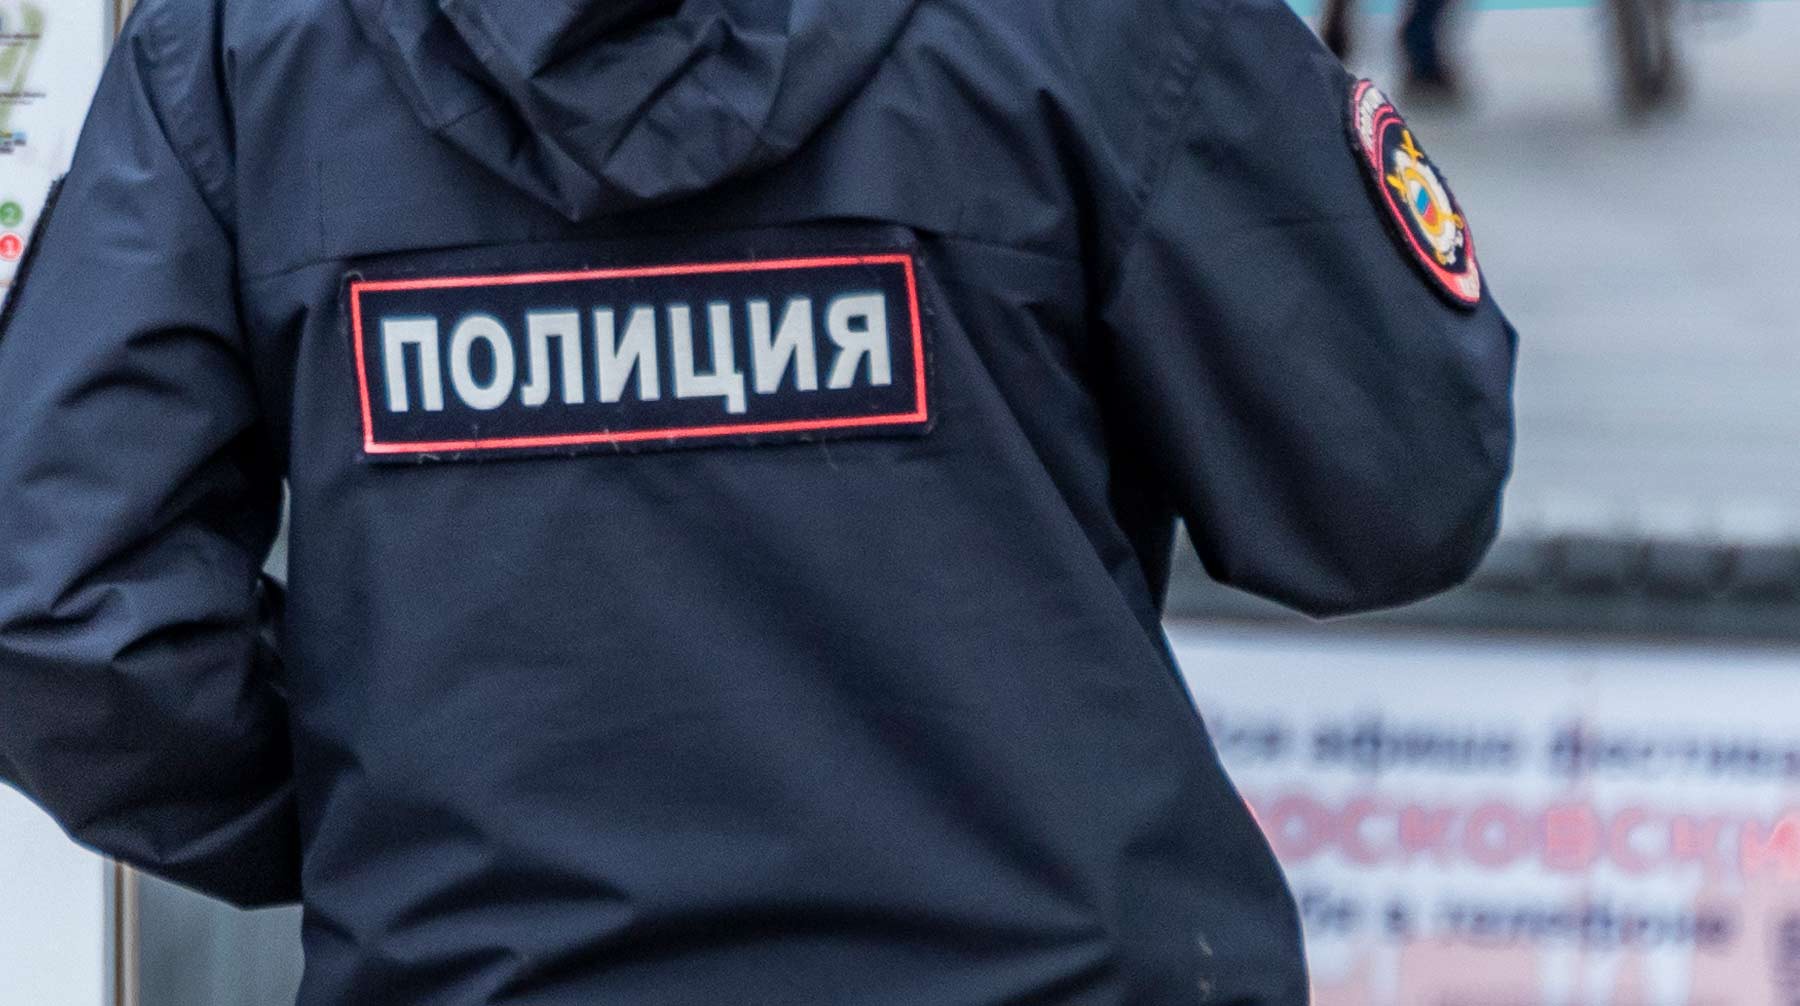 Dailystorm - В Нижегородской области ранивший бабушку устроил расстрел на автобусной остановке